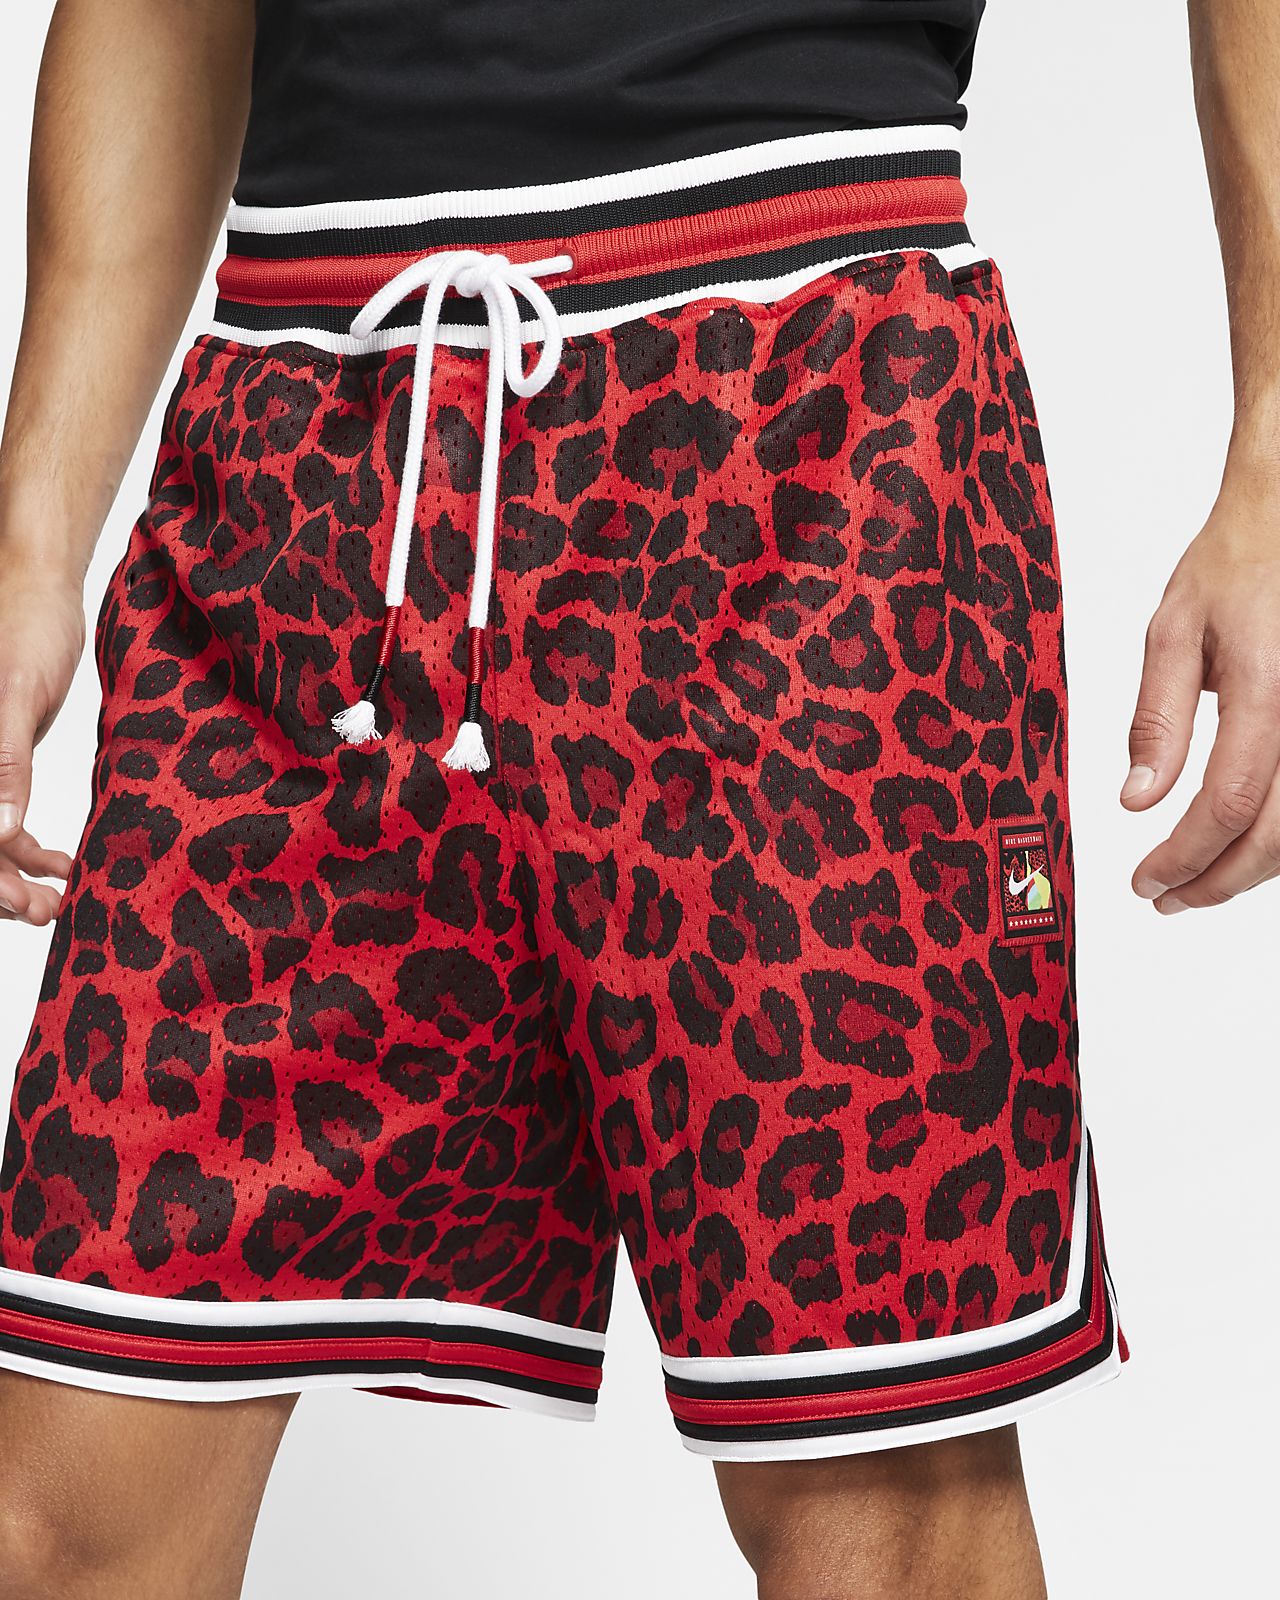 cheetah nike shorts